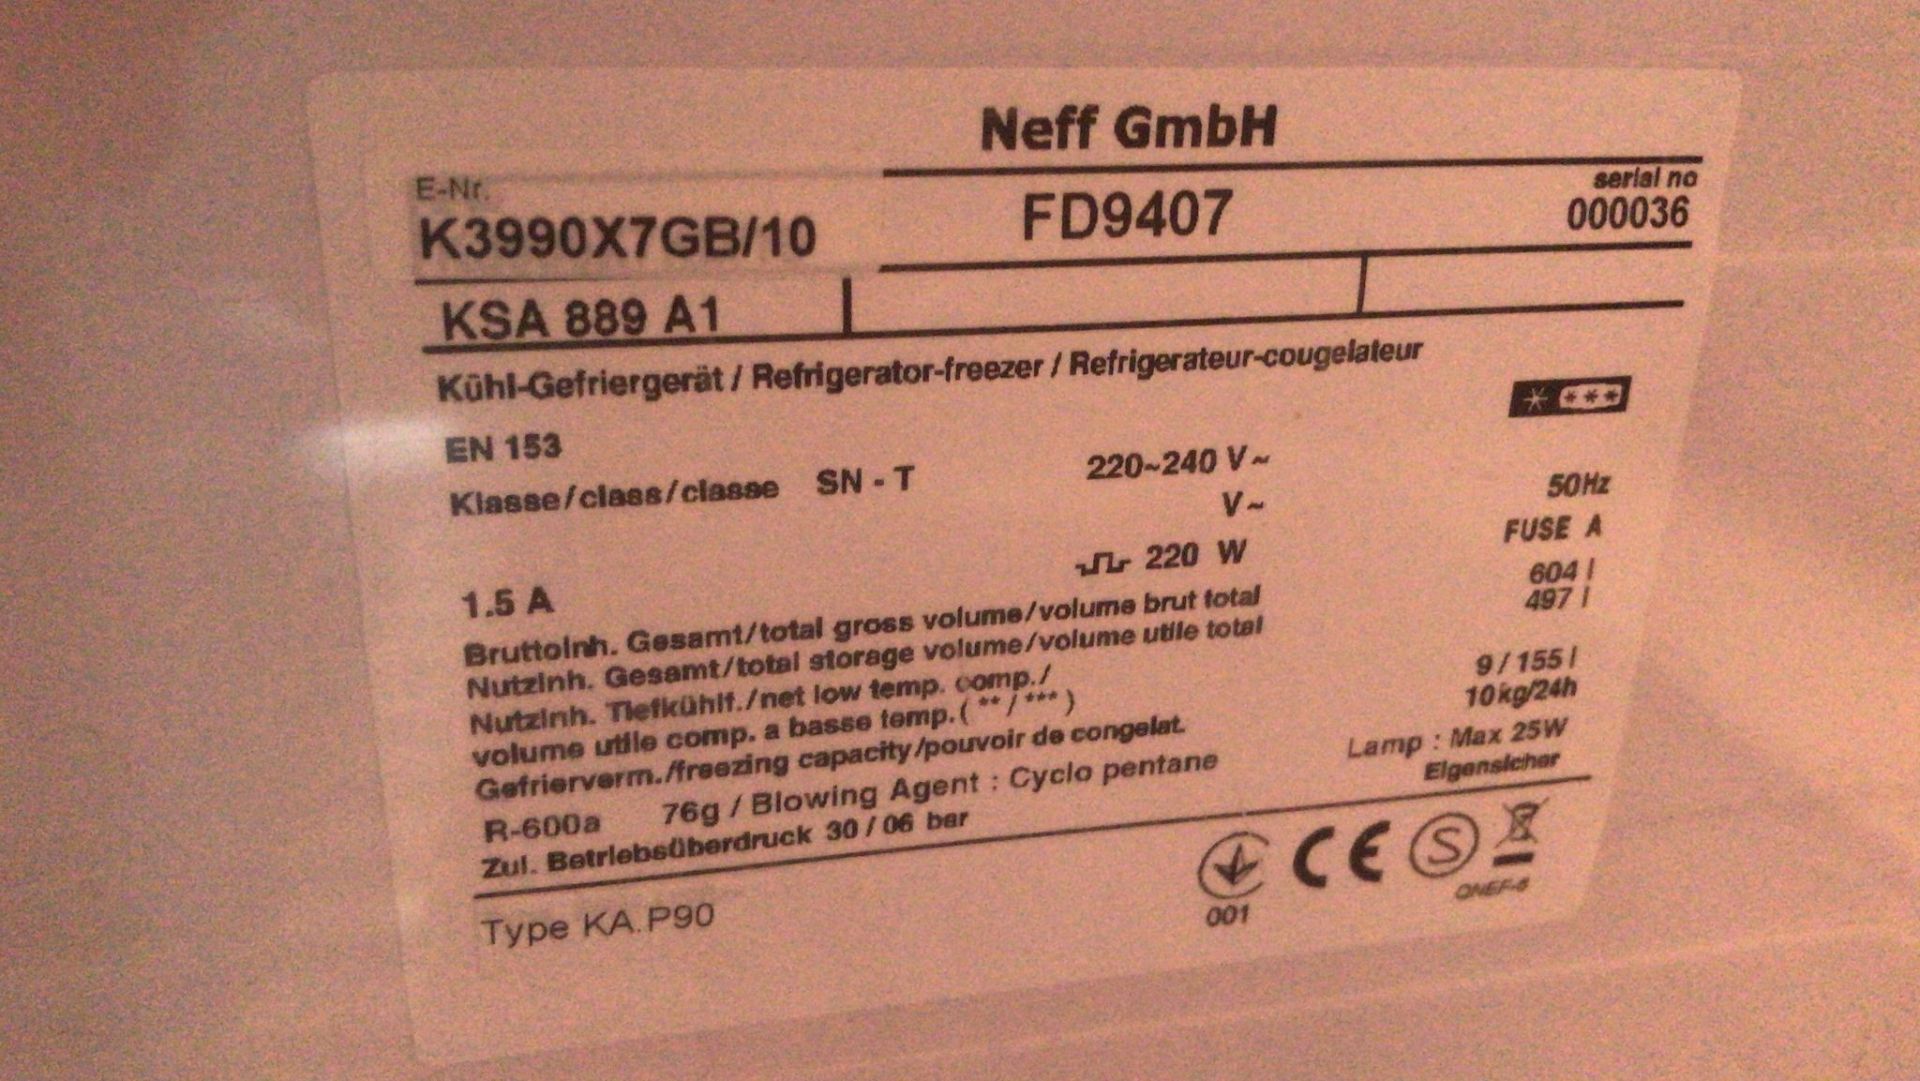 Neff FD9407 Stainless Steel Double-Door Fridge/Freezer with Water Dispenser - Image 2 of 2